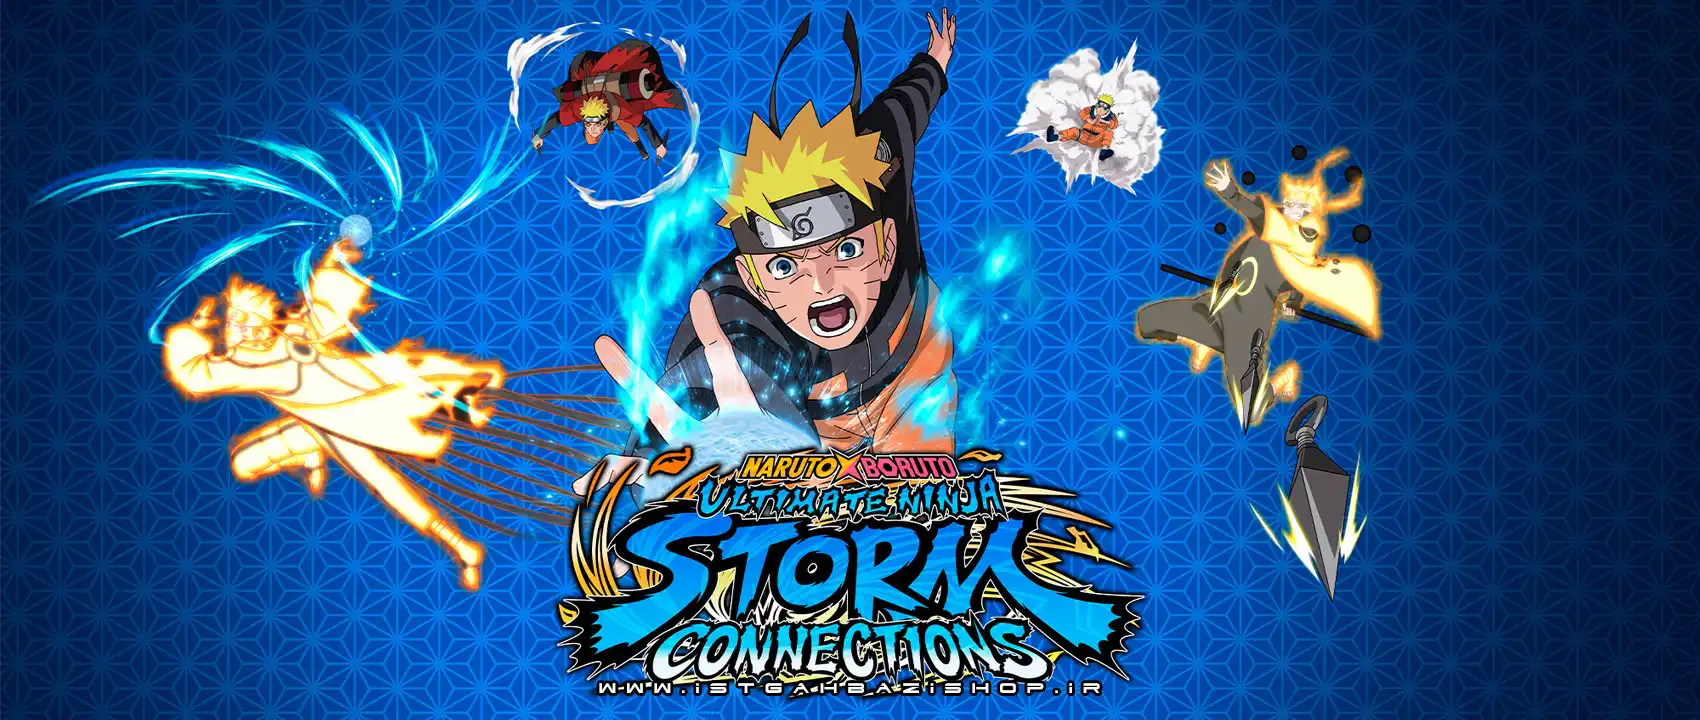 خرید بازی Naruto x Boruto Ultimate Ninja Storm connections سوییچ